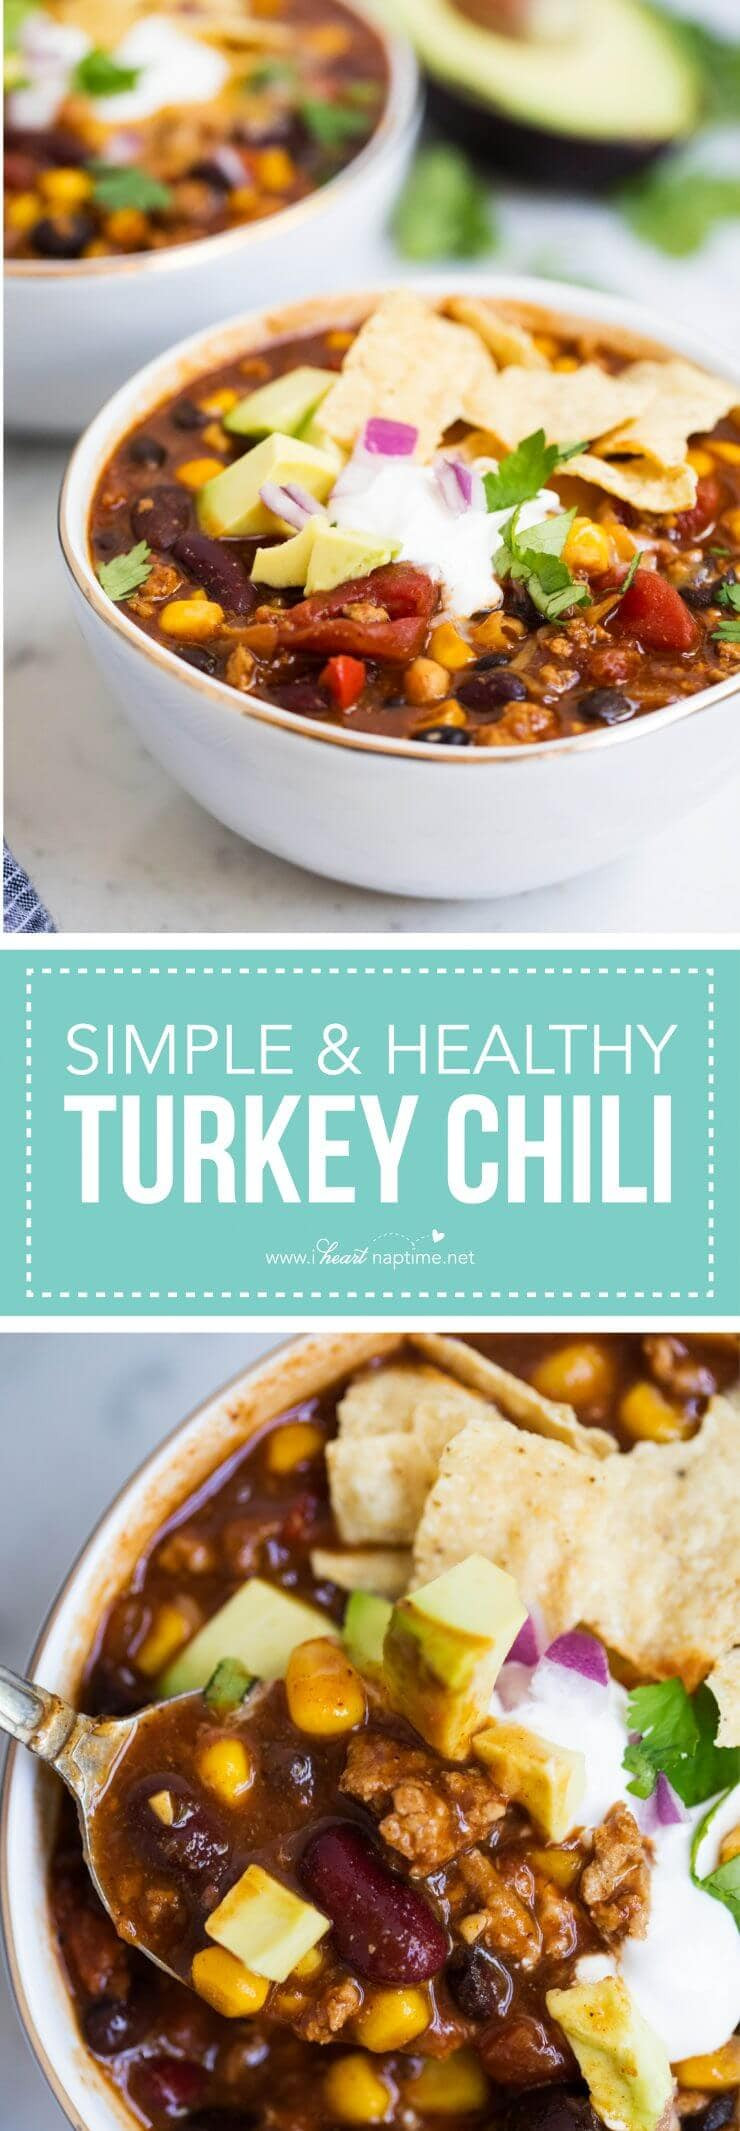 Heart Healthy Thanksgiving Recipes
 EASY and Healthy Turkey Chili Recipe I Heart Naptime